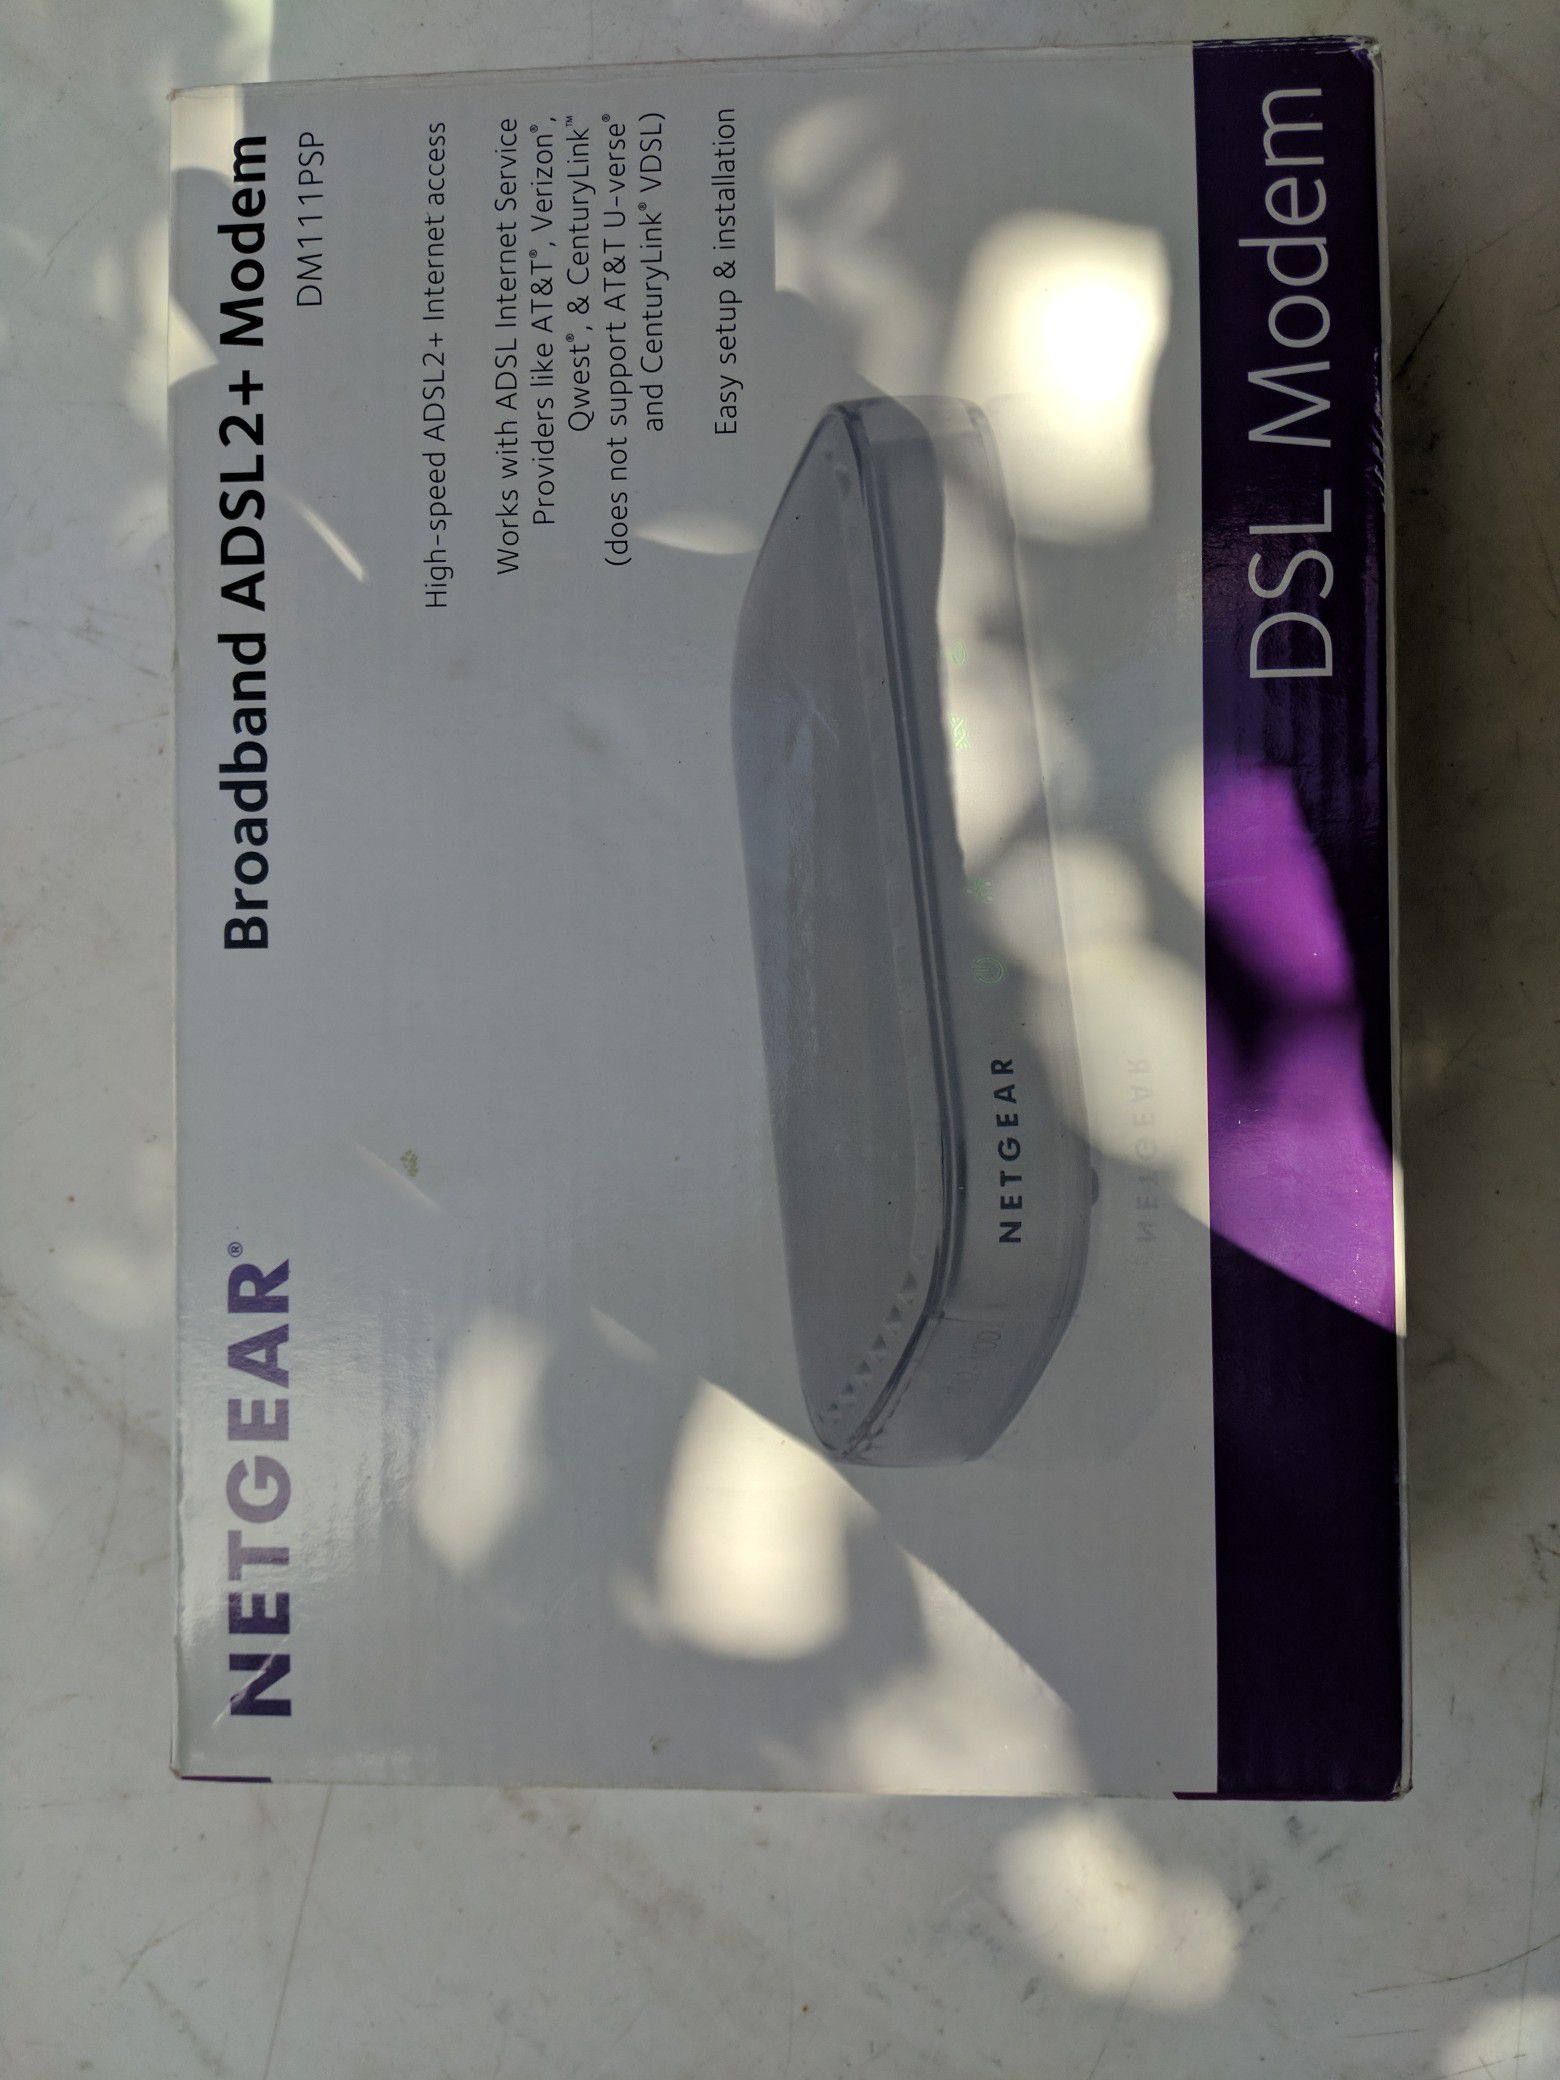 New ADSL2+ netgear modem